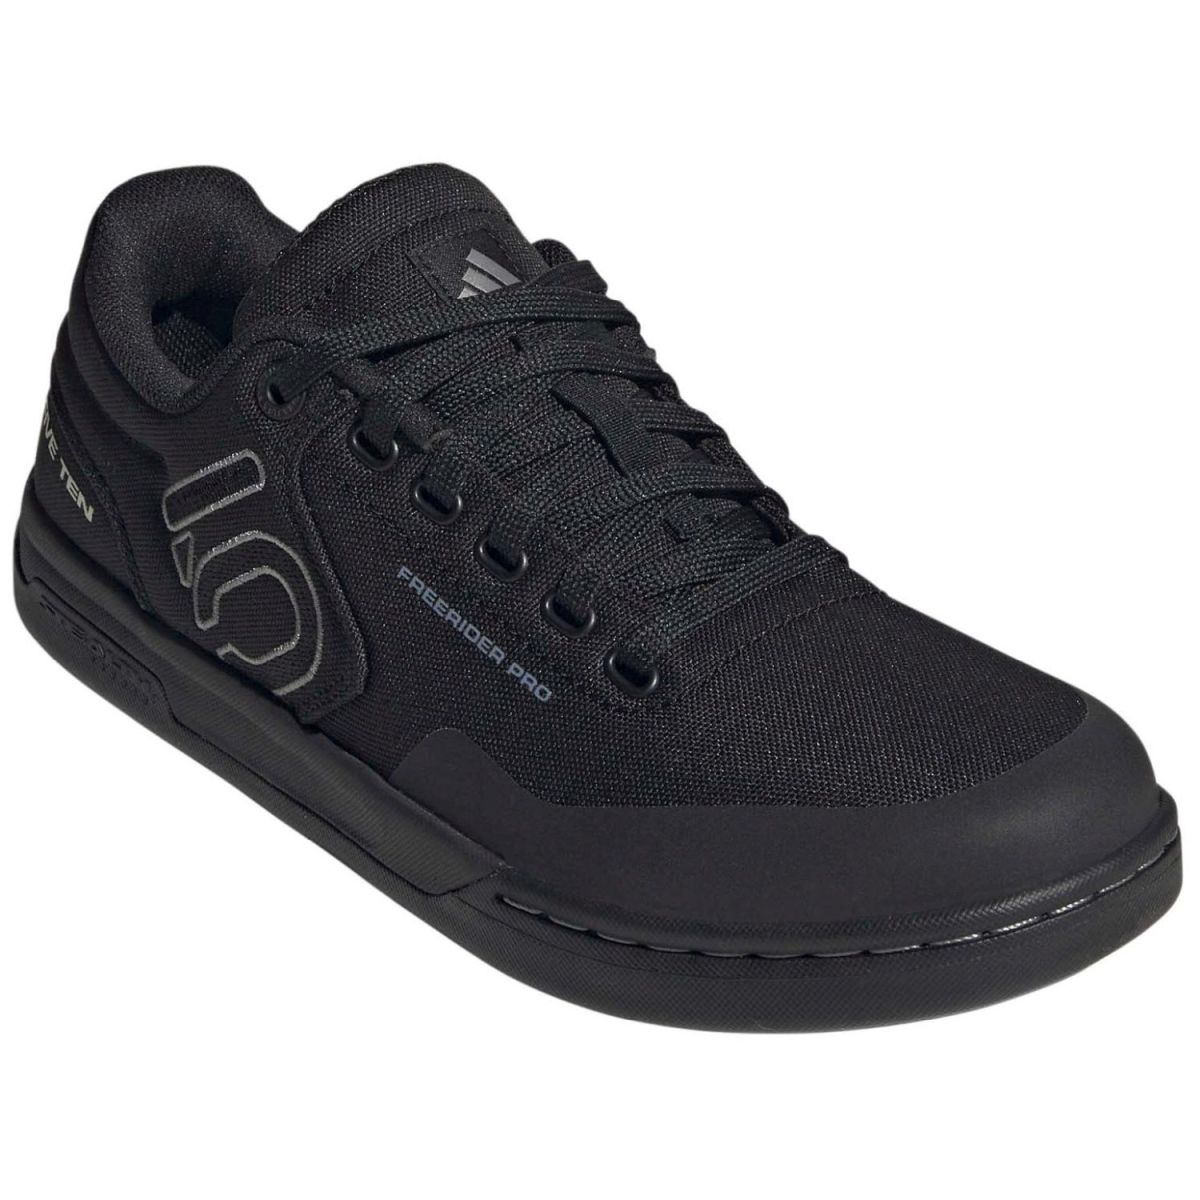 Zapatillas Five Ten Freerider Pro Canvas negras pedal de plataforma HQ2110 color negro